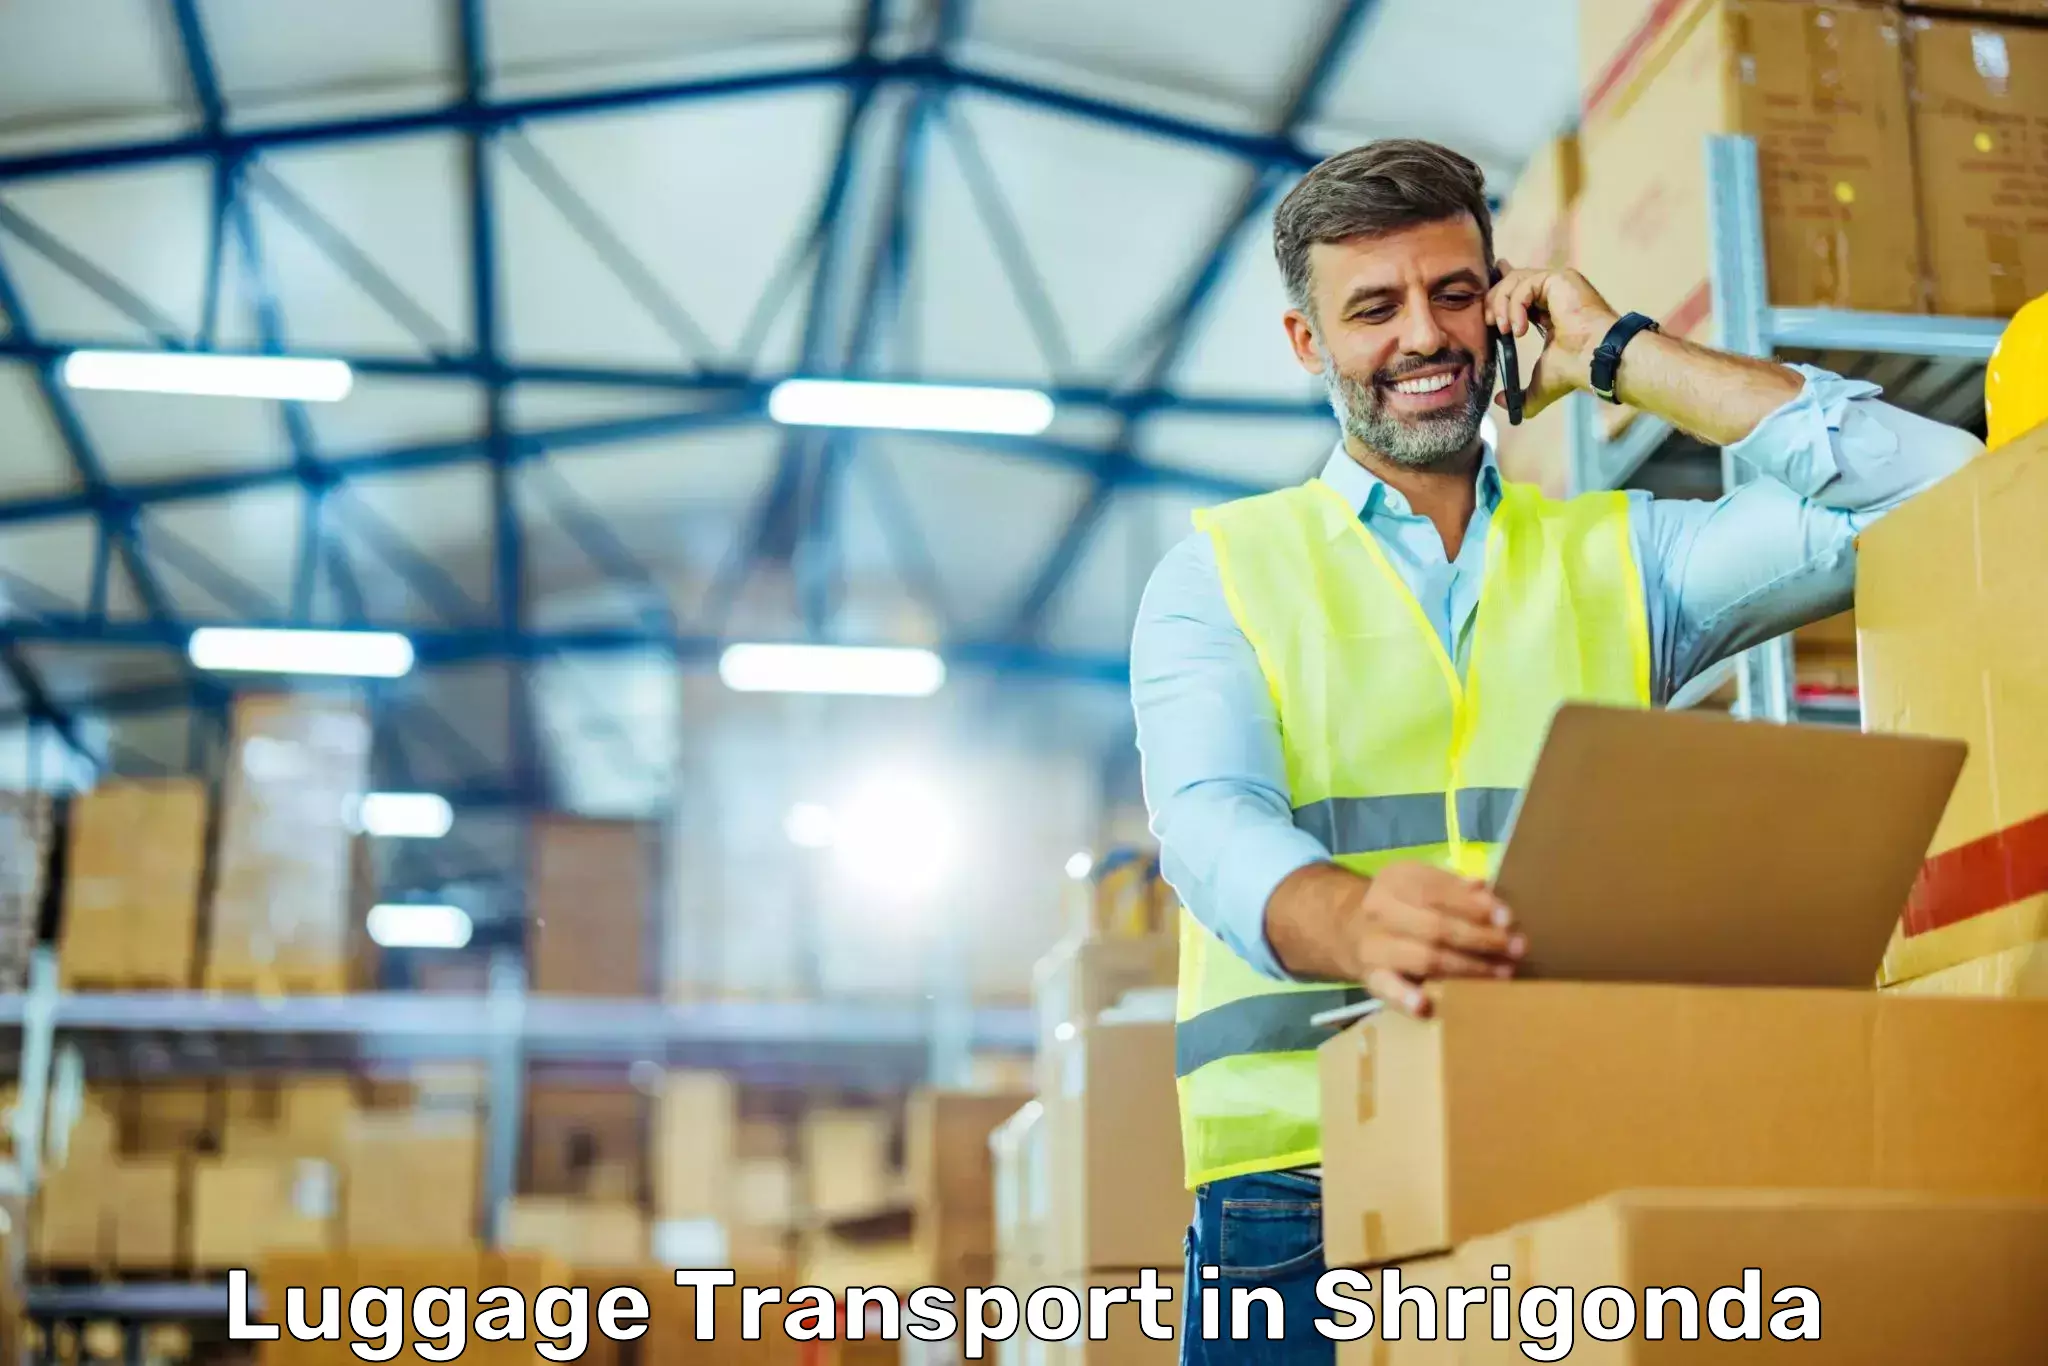 Luggage shipping options in Shrigonda